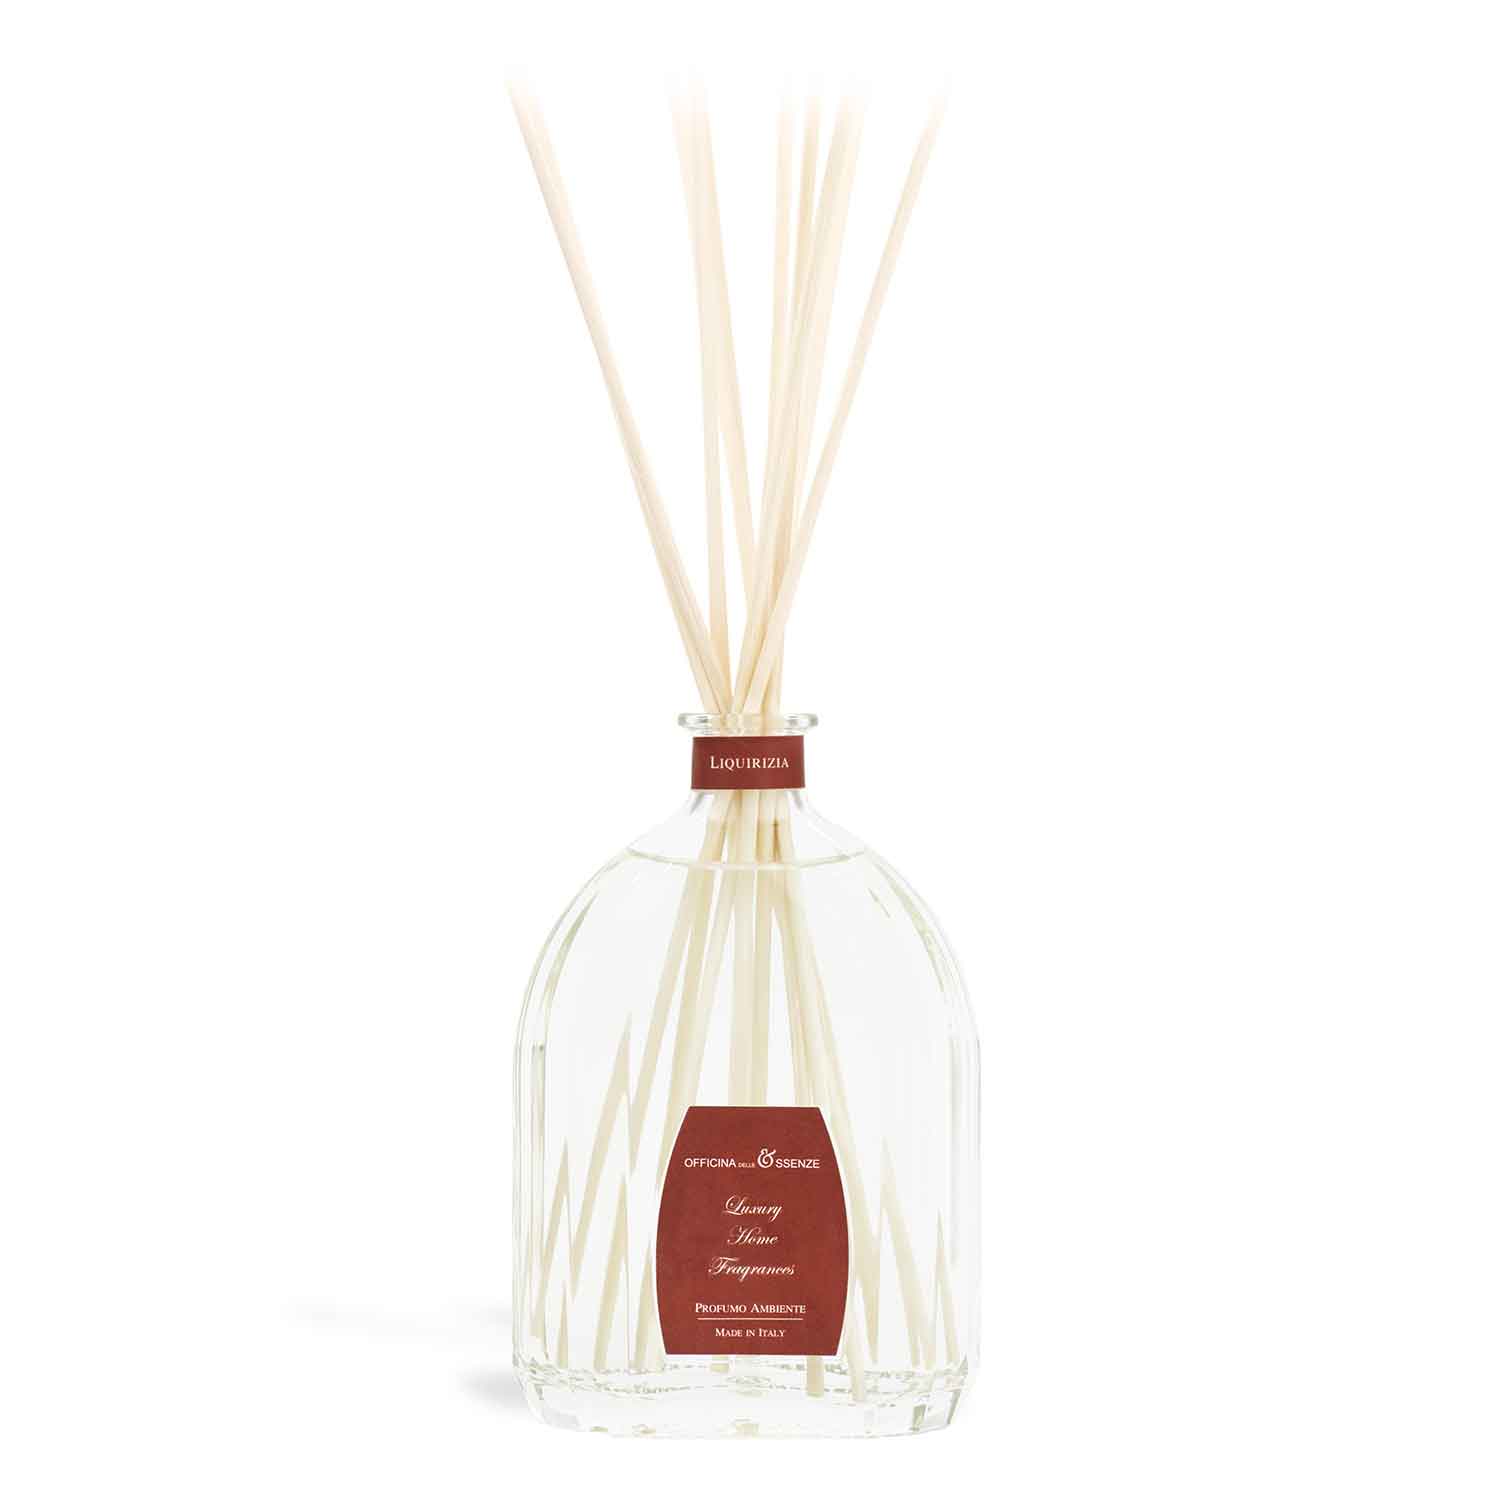 Liquirizia - Home fragrance diffuser with essential oils, 500 ml